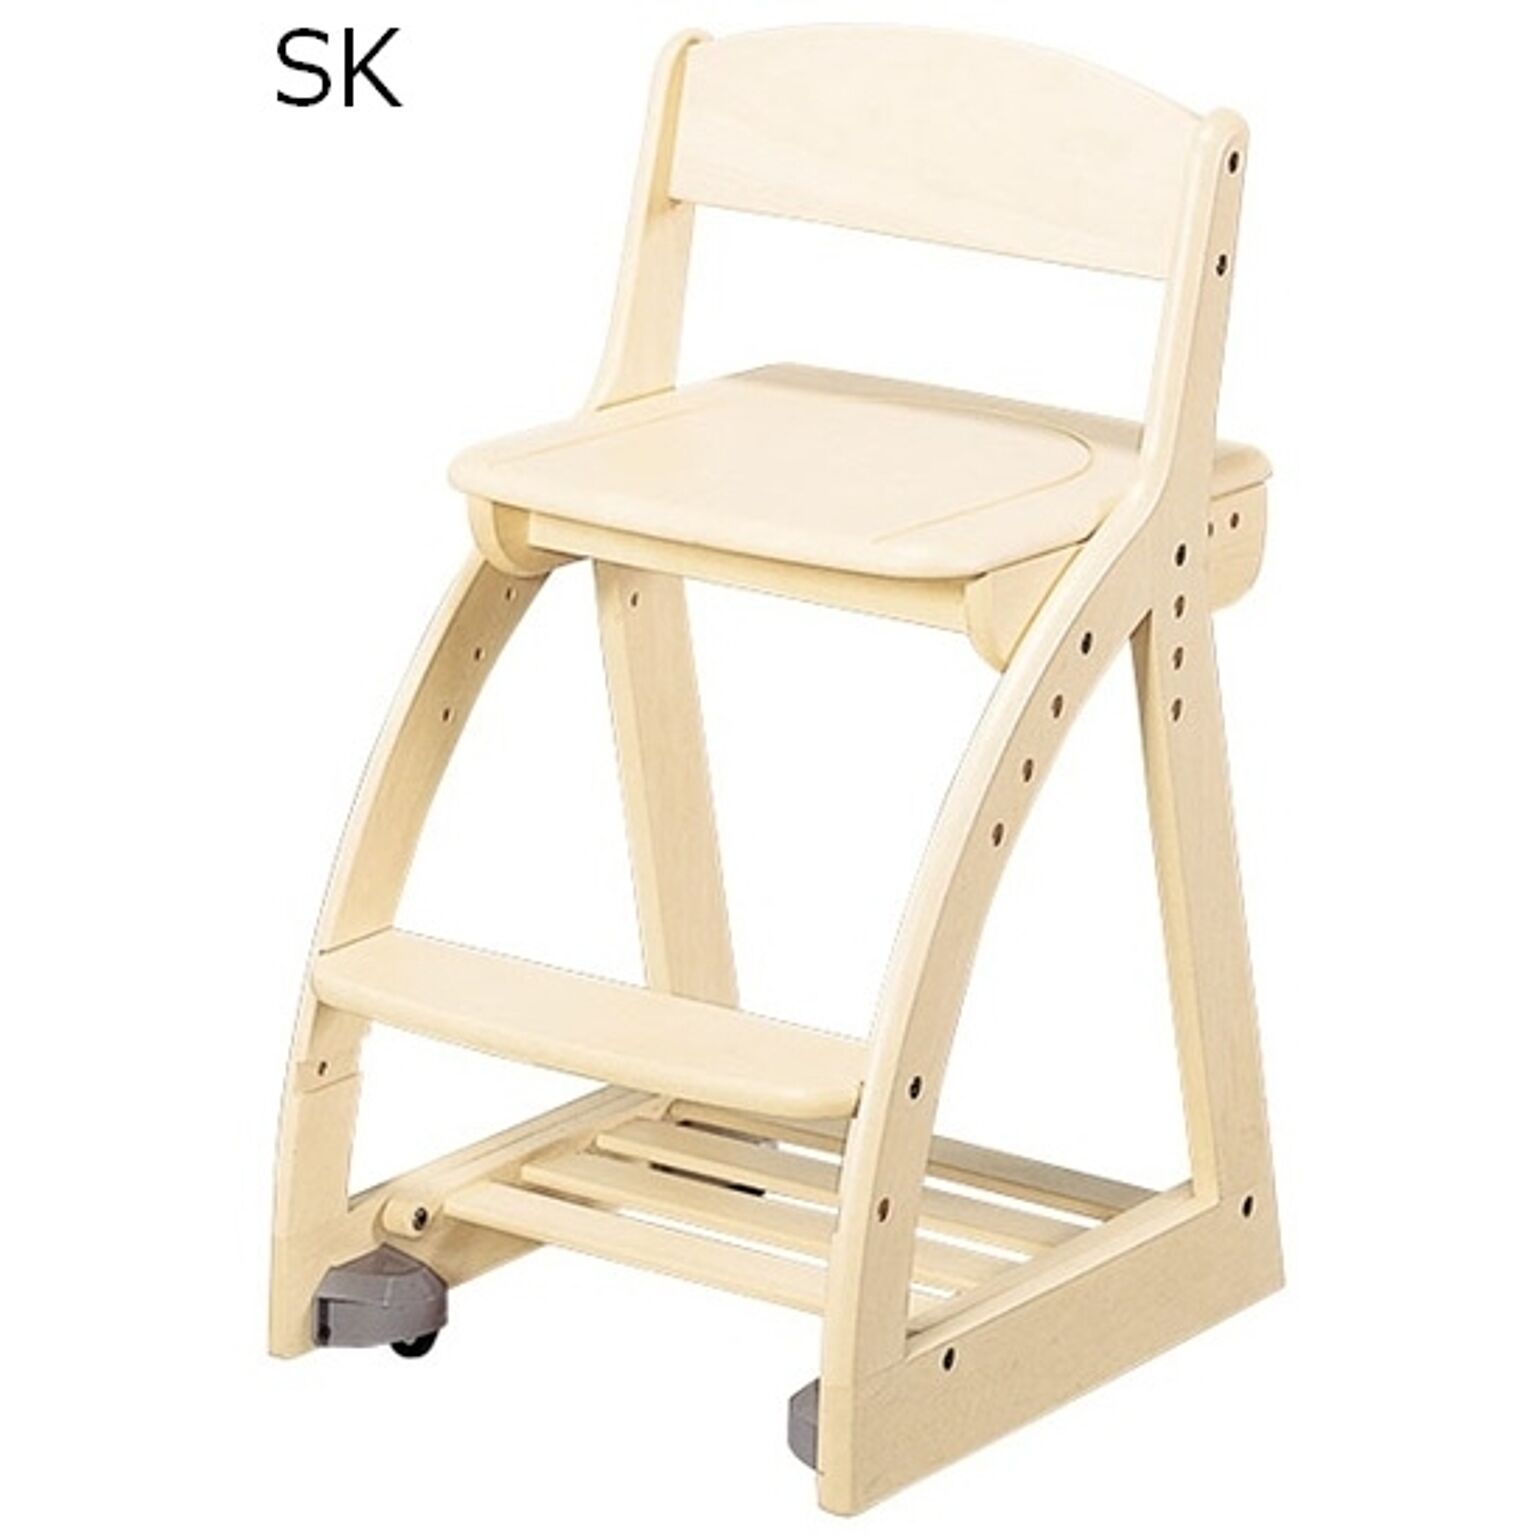 4ステップチェア 板座 幅41.3 奥行49.5 高さ74.5 カラー5色 組立式 座面高さ調節 キャスター付 ラバーウッド材 デスクチェア 木製 椅子 学習イス KOIZUMI コイズミ 